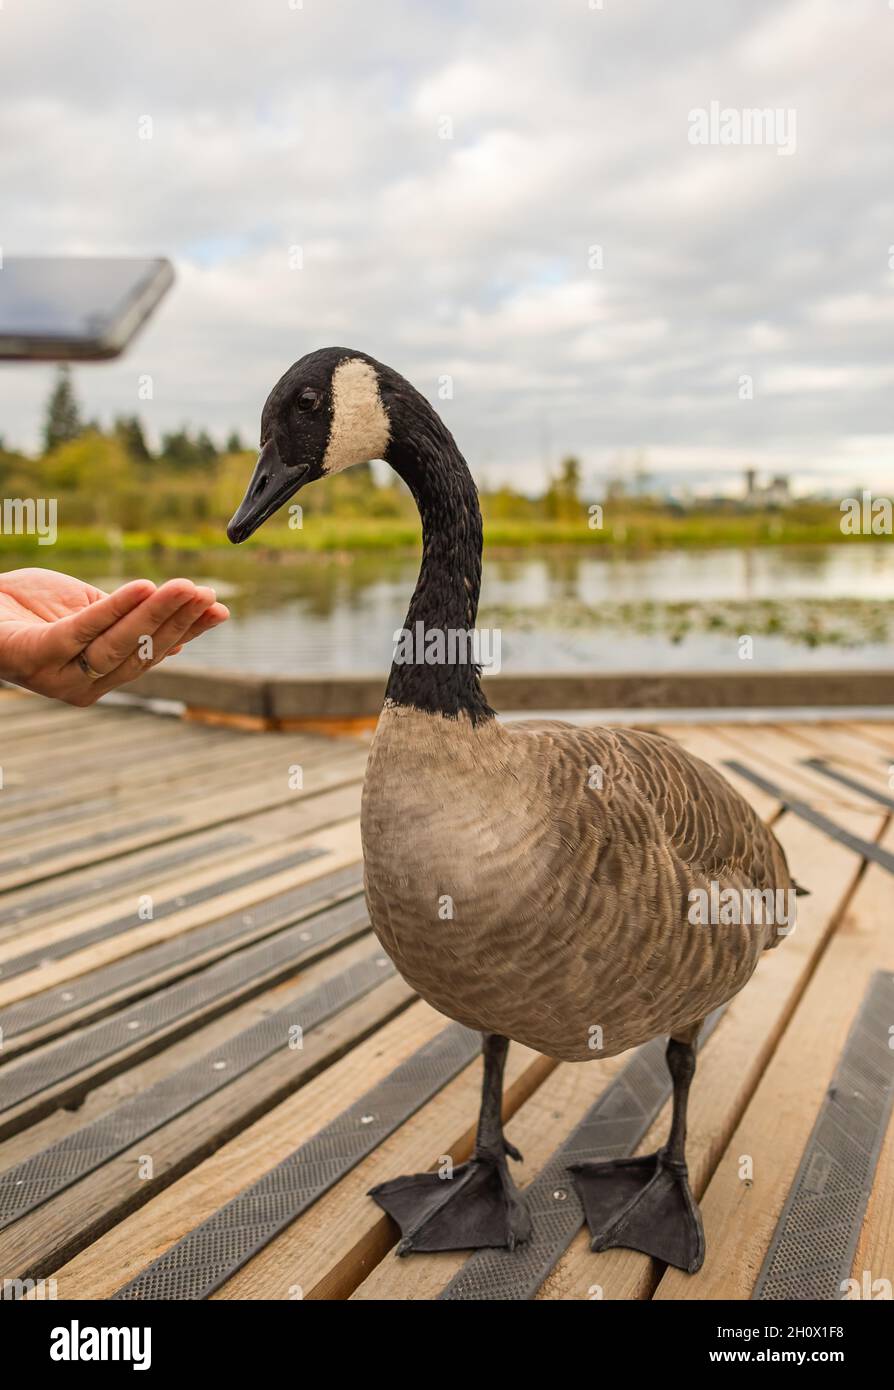 Una donna che alimenta un'oca canadese nel parco. L'oca canadese mangia a mano. Santuario degli uccelli, vista sulla strada, foto di viaggio. Foto Stock